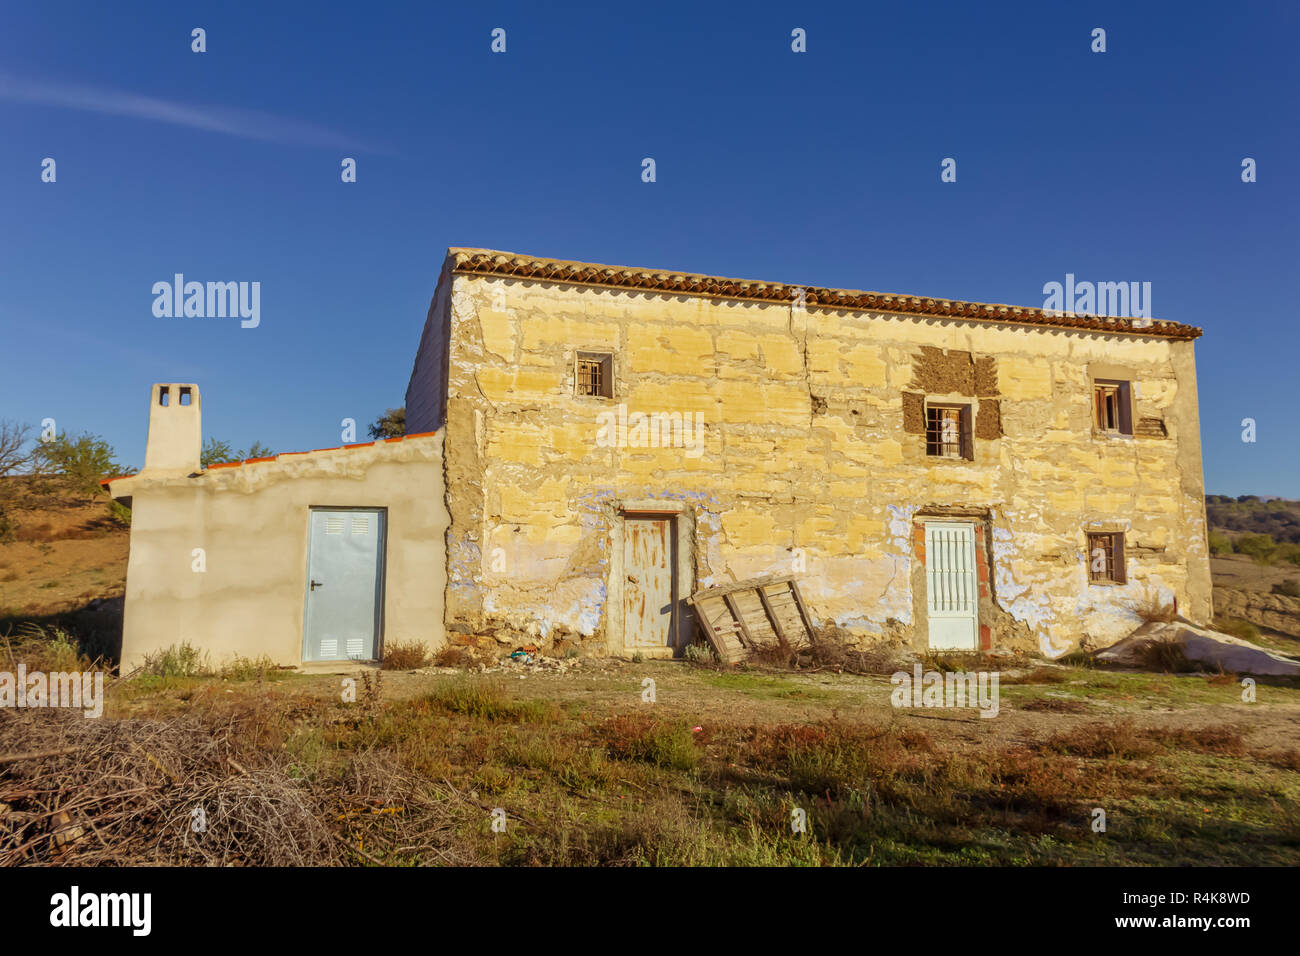 Spanish Houses in Rural Almeria, Spain Stock Photo